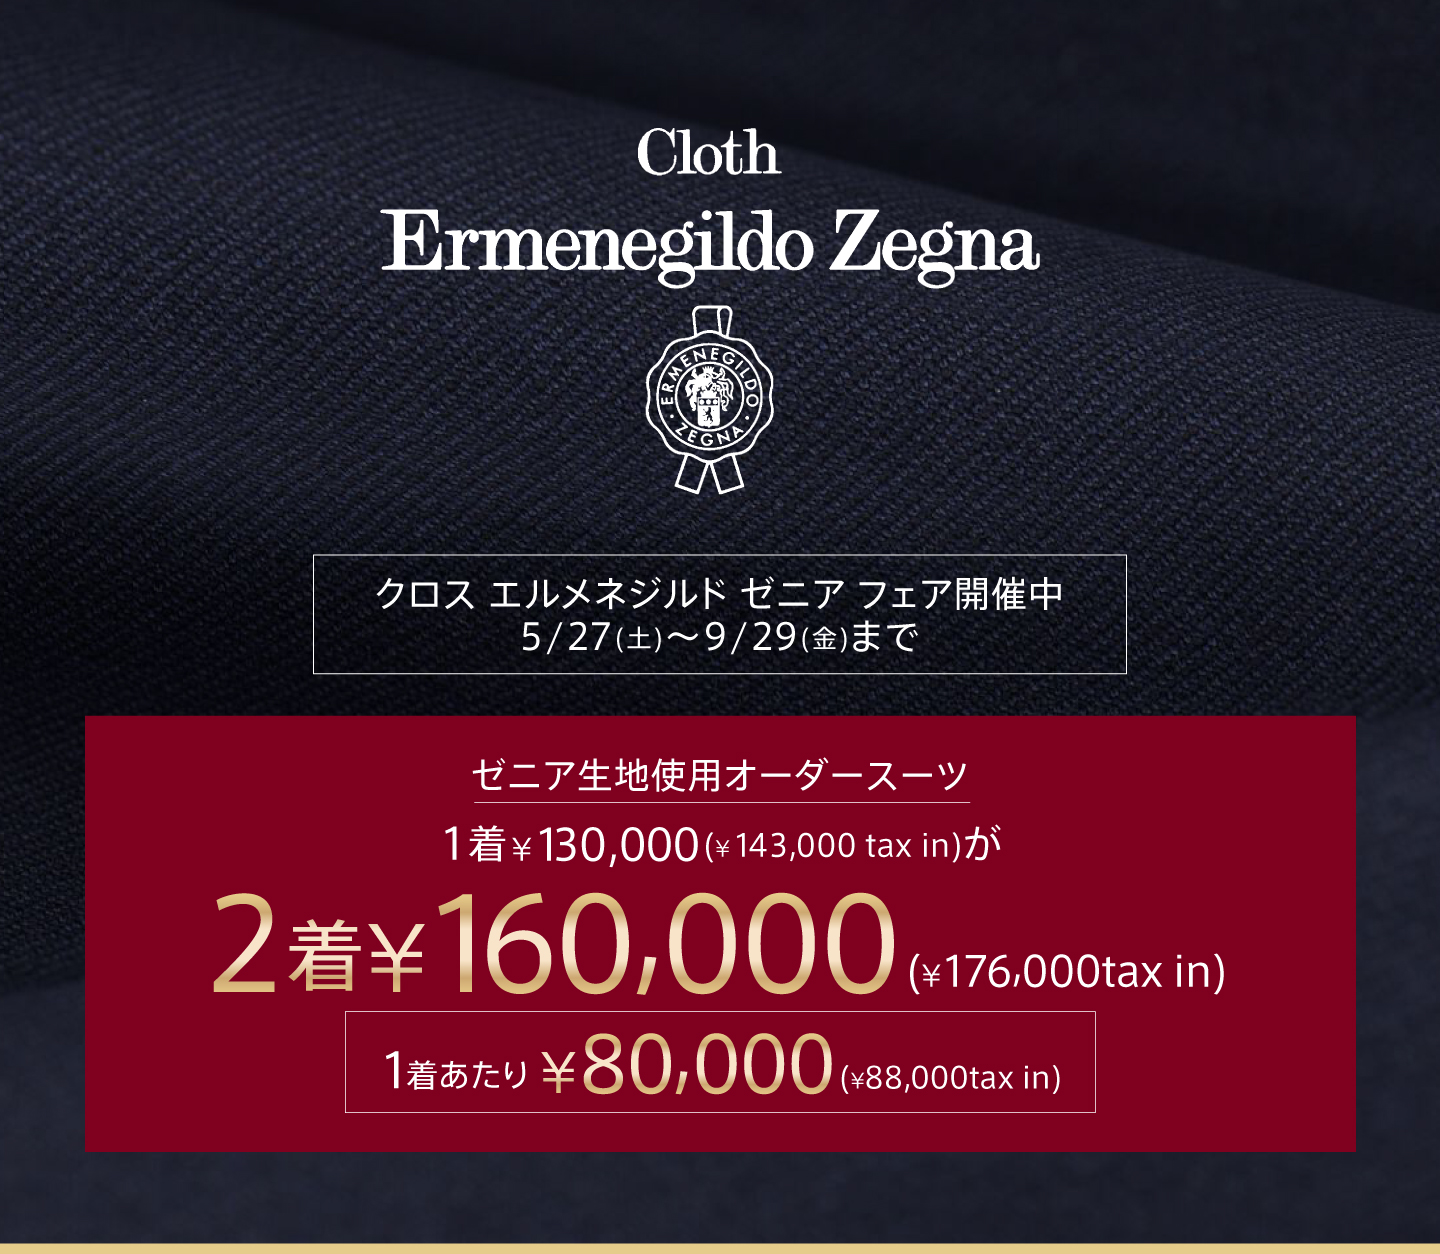 Cloth Ermenegildo Zegna FAIR 開催！ゼニア生地使用 オーダースーツが